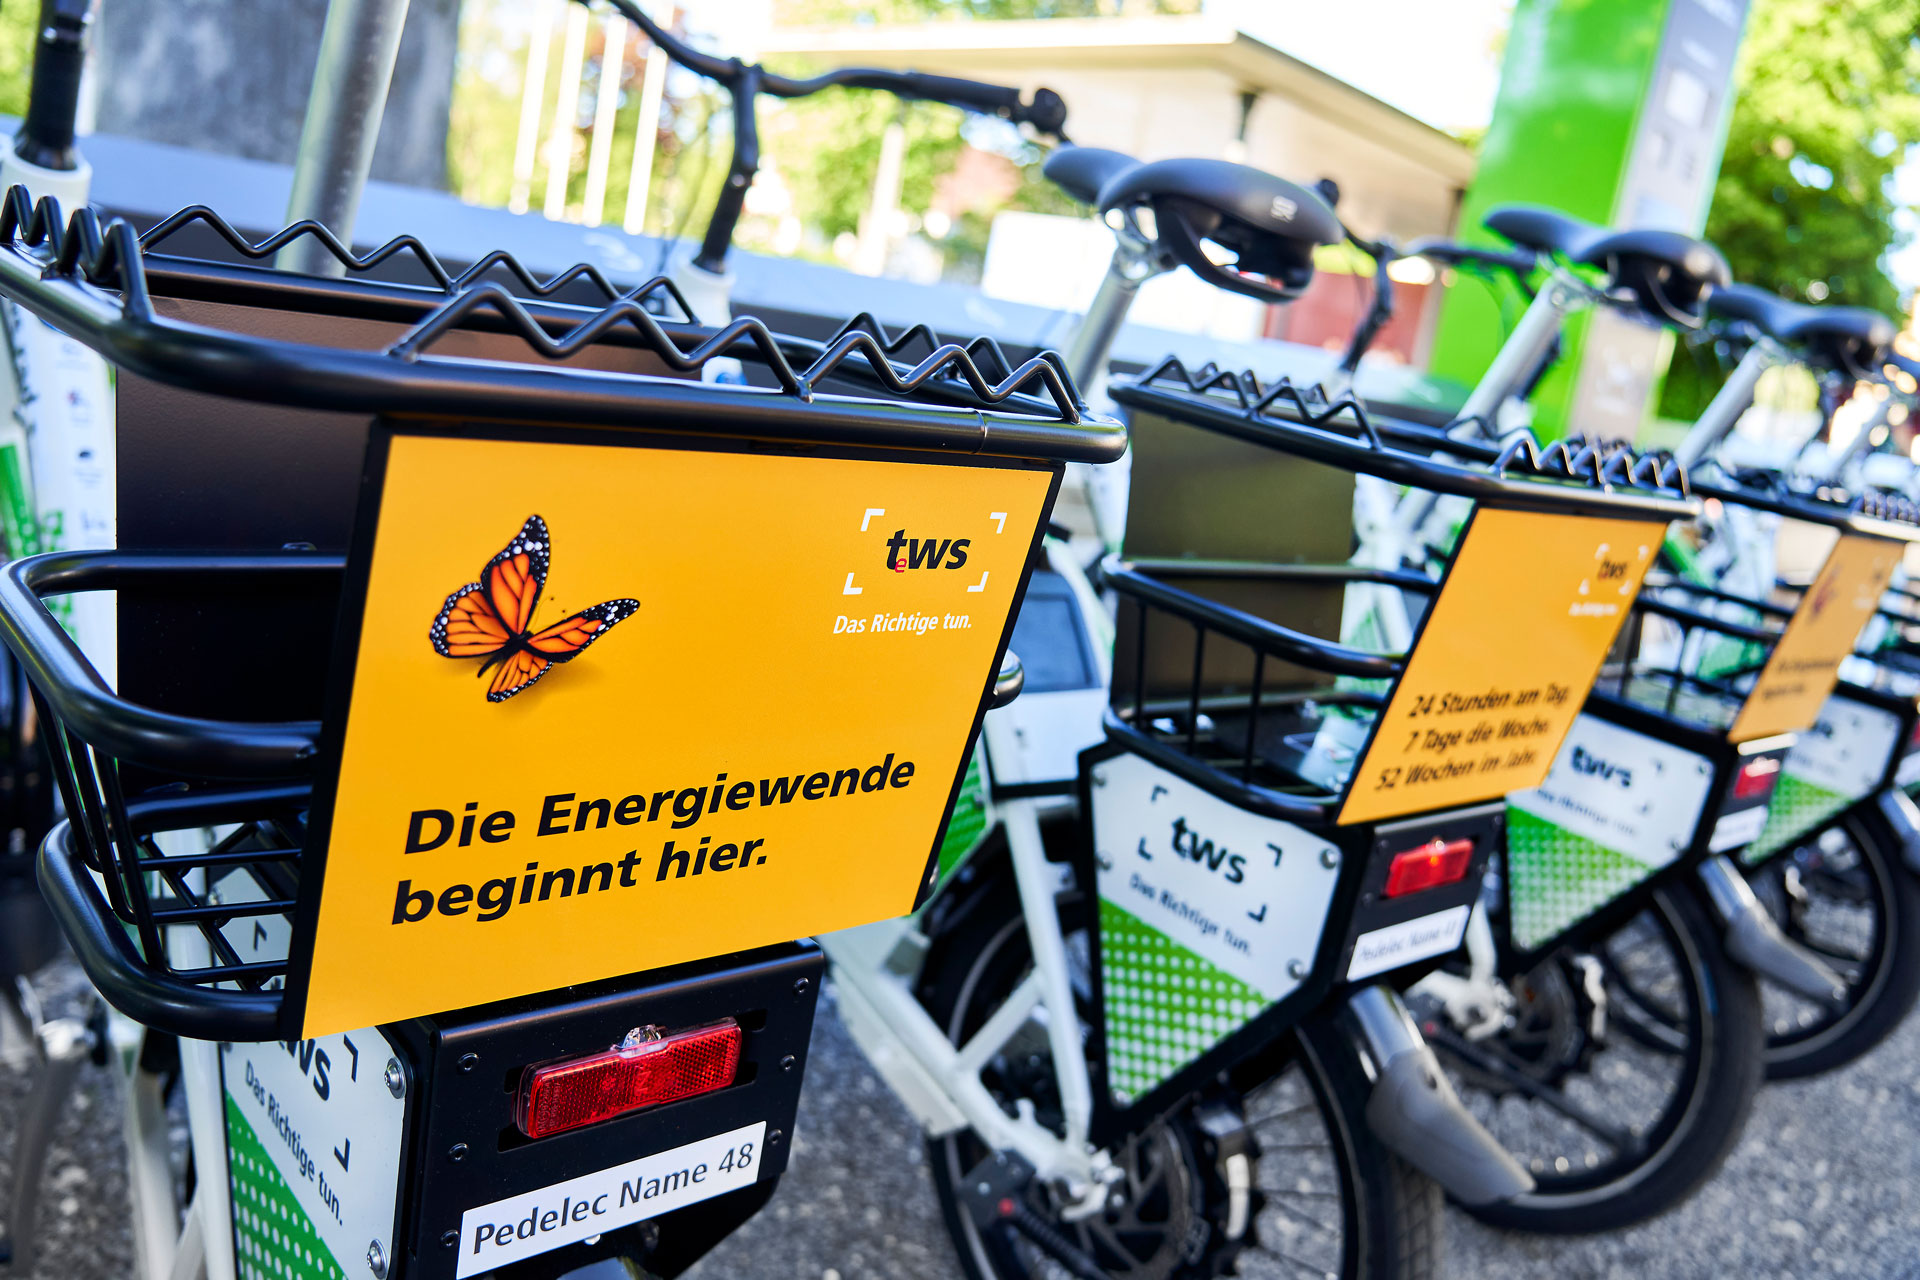 Markenentwicklung und Corporate Design für den mobilen Fahrrad-Leihservice der tws aus Ravensburg und Weingarten von der Designagentur das formt aus München